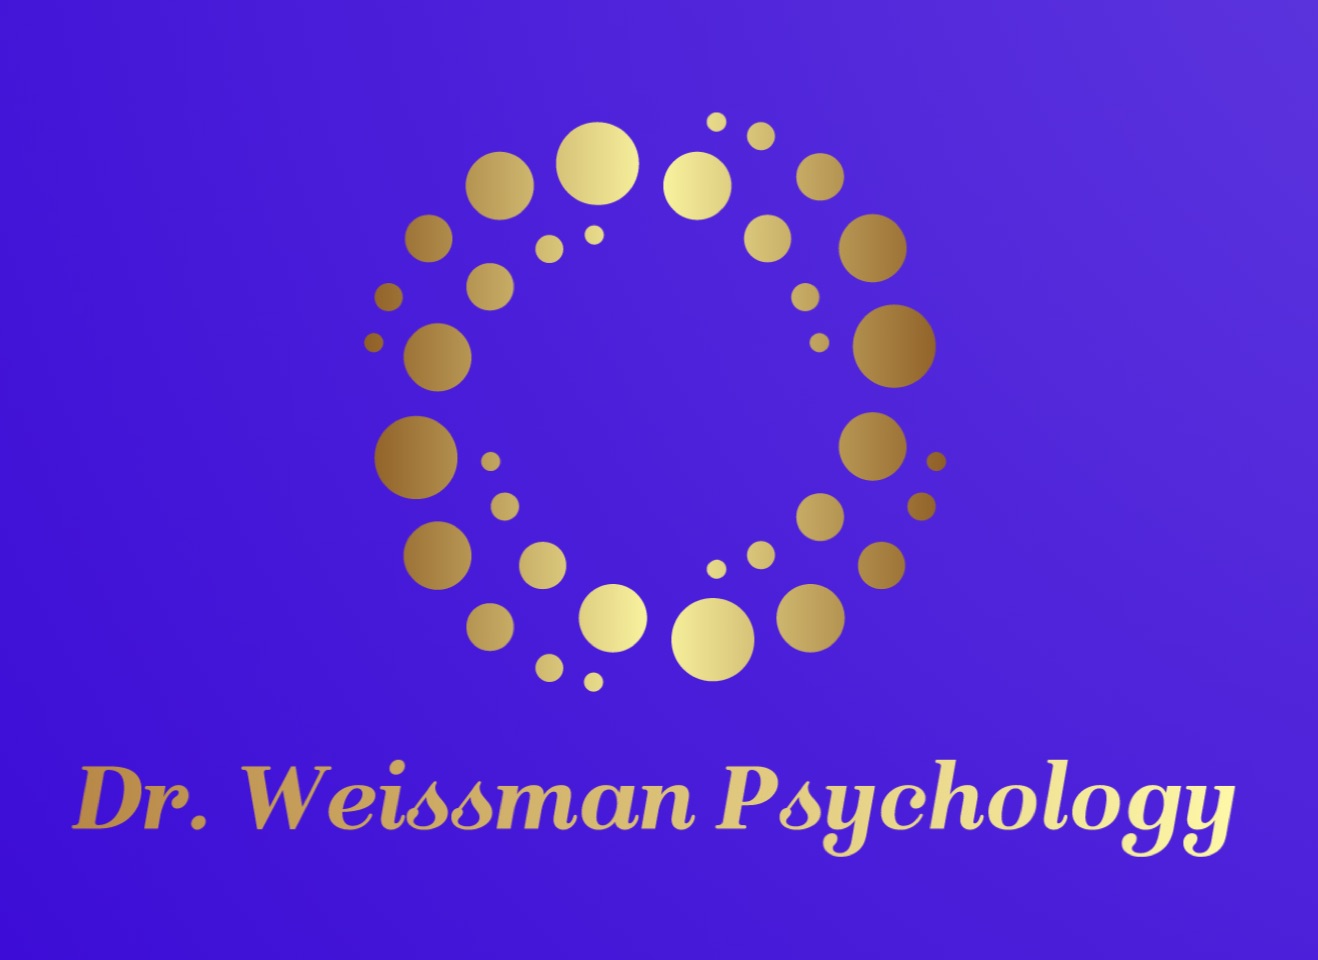 About Dr. Weissman Psychology